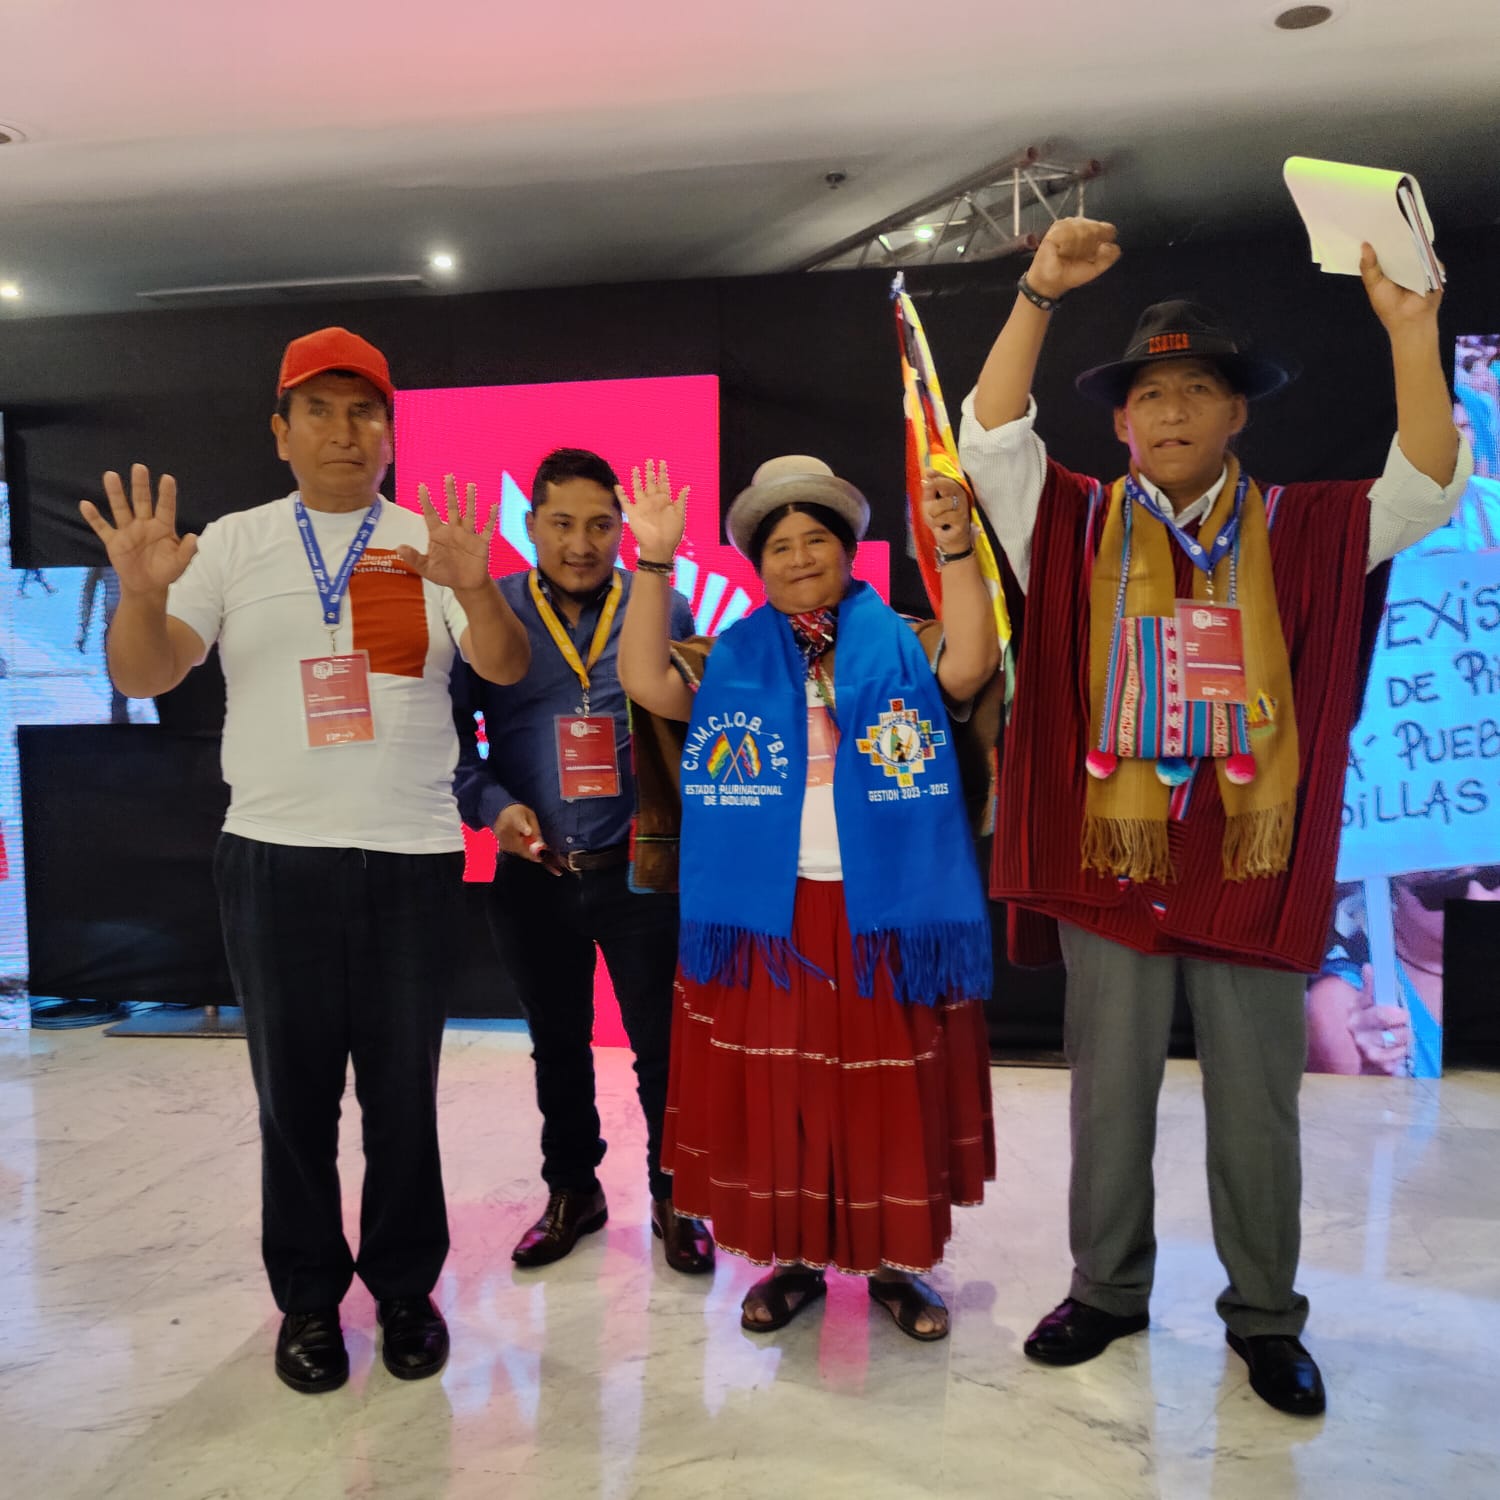 Organizaciones sociales de Bolivia exponen ante el ALBA-TCP experiencias de lucha por la unidad